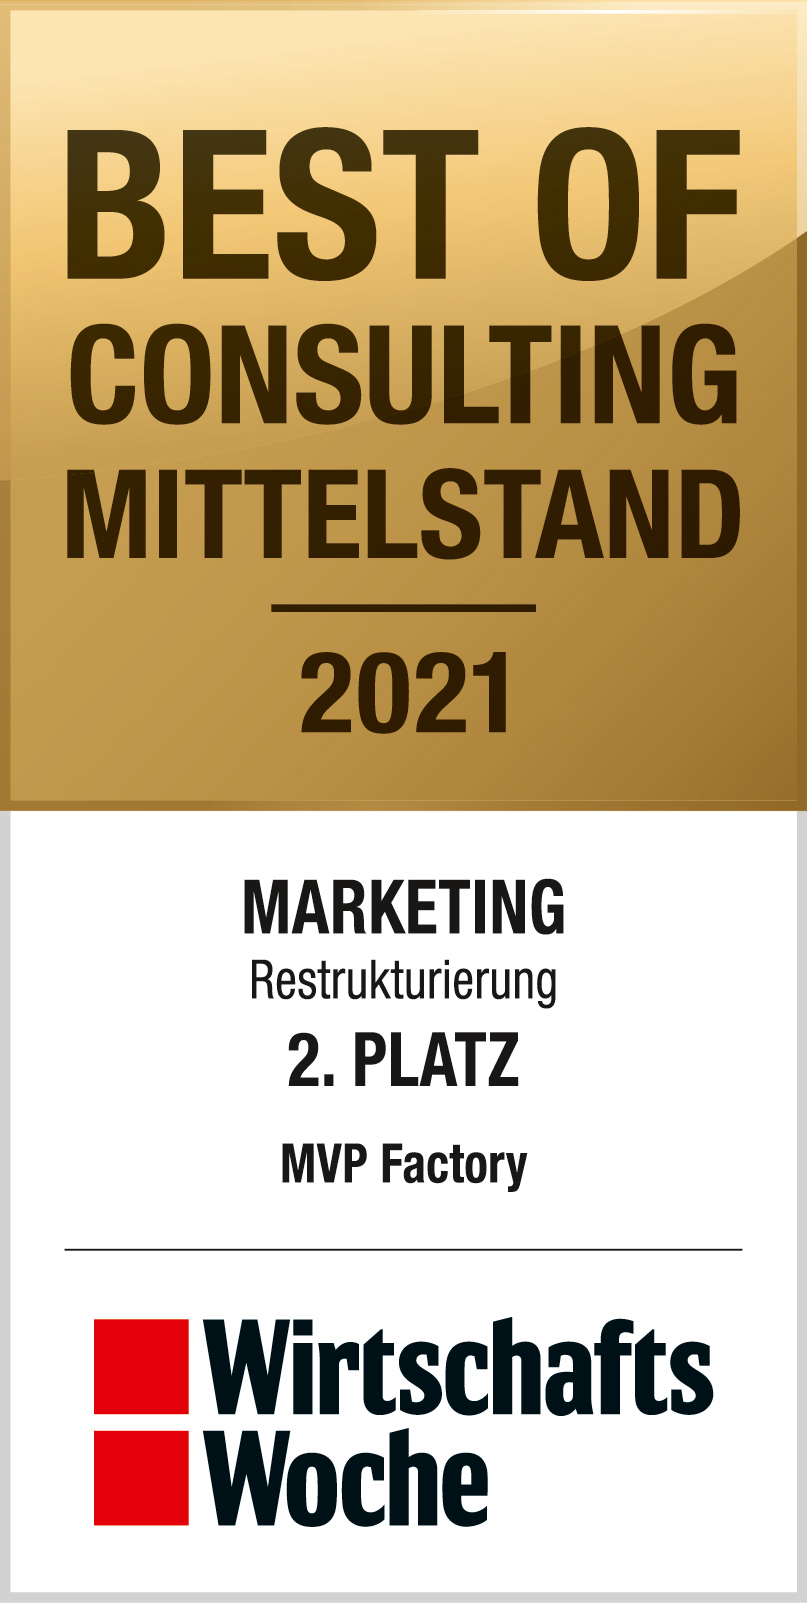 Wirtschafts Woche - Best of consulting mittlestand 2021 - Marketing Restrukturierung - 2. platz